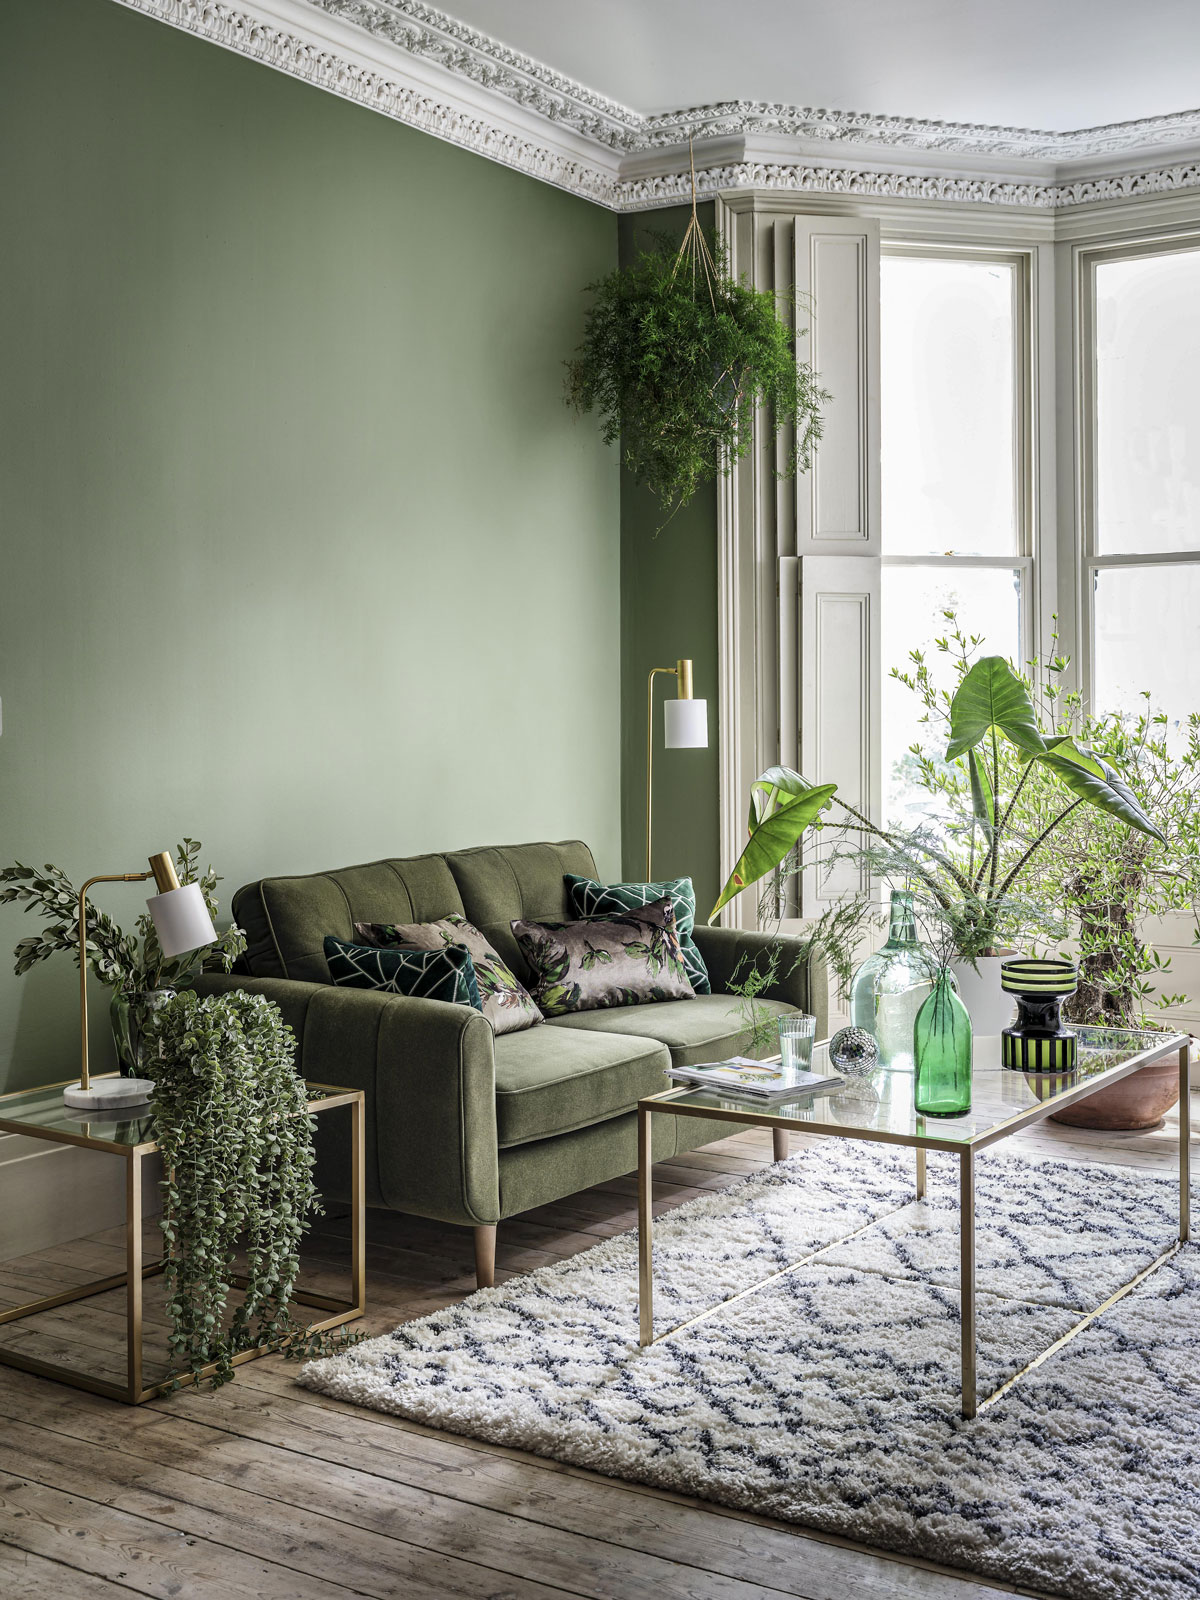 Interiér obývačky ladenej do zelena. Obývačka má vysoké zdobené stropy, zelenú stenu, pri ktorej stojí zamatová olivová sedačka, pri sedačke sú kovové stolíky so sklom, v miestnosti sú zelené izbové rastliny